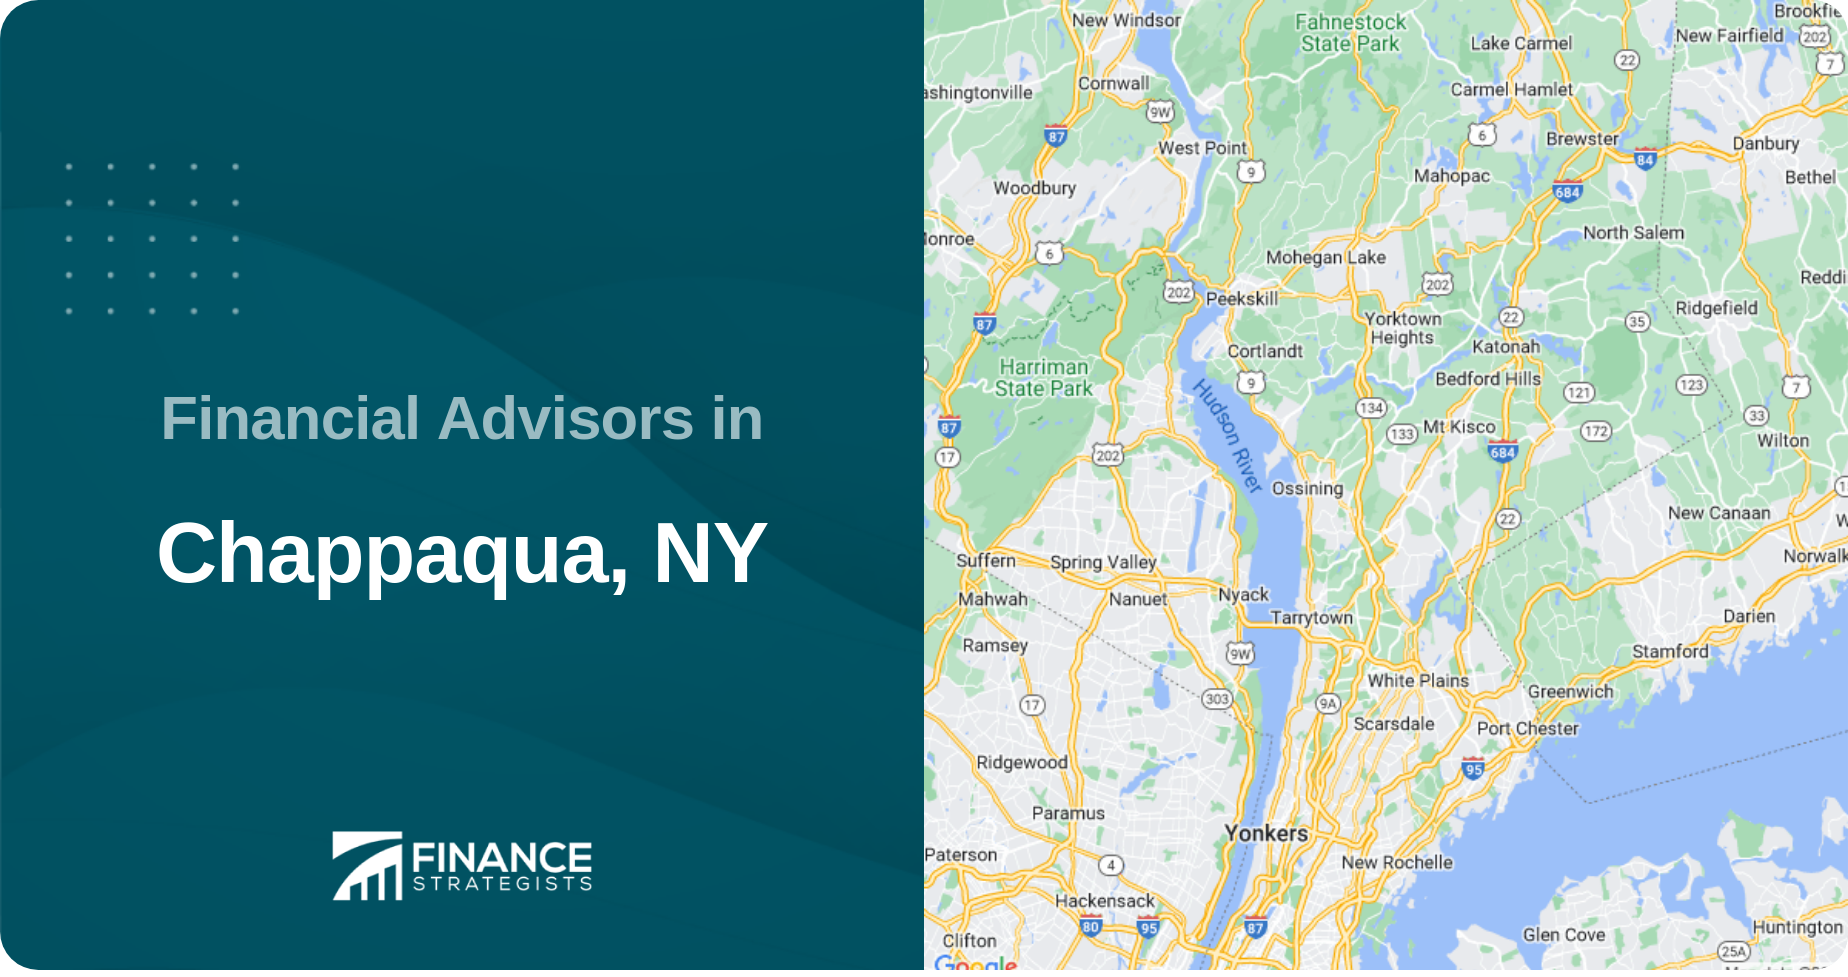 Financial Advisors in Chappaqua, NY